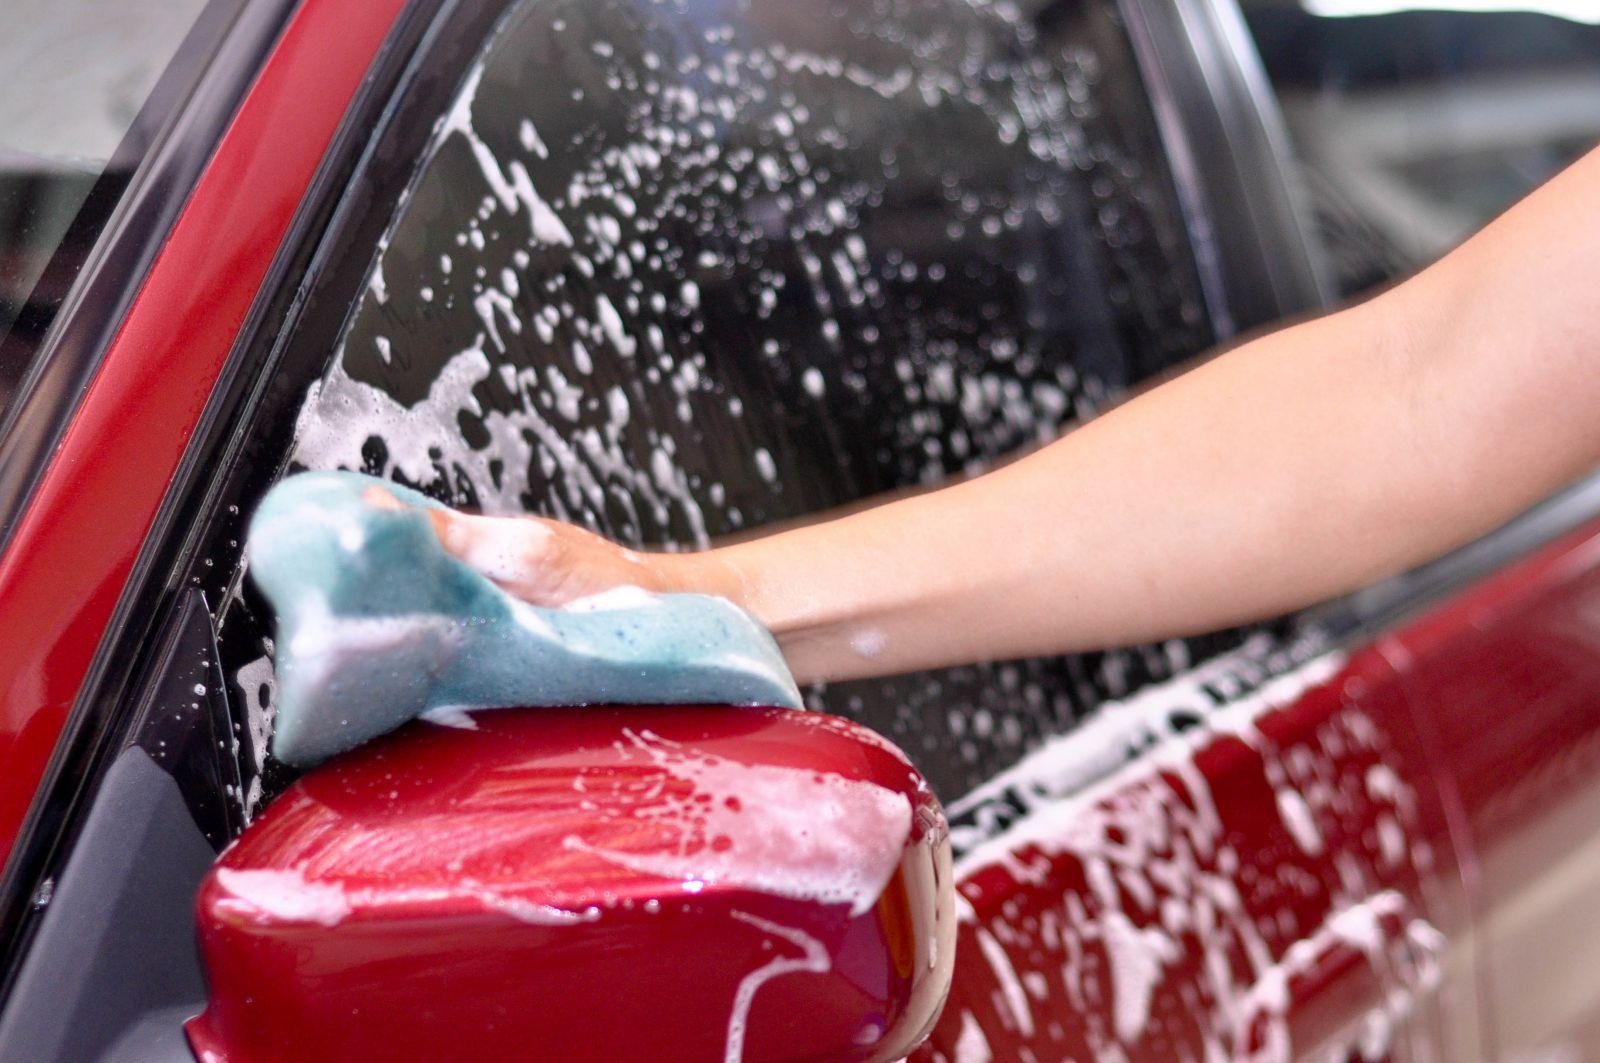 lavagem automotiva Toyota Etios Sedan  (Carro Grande)